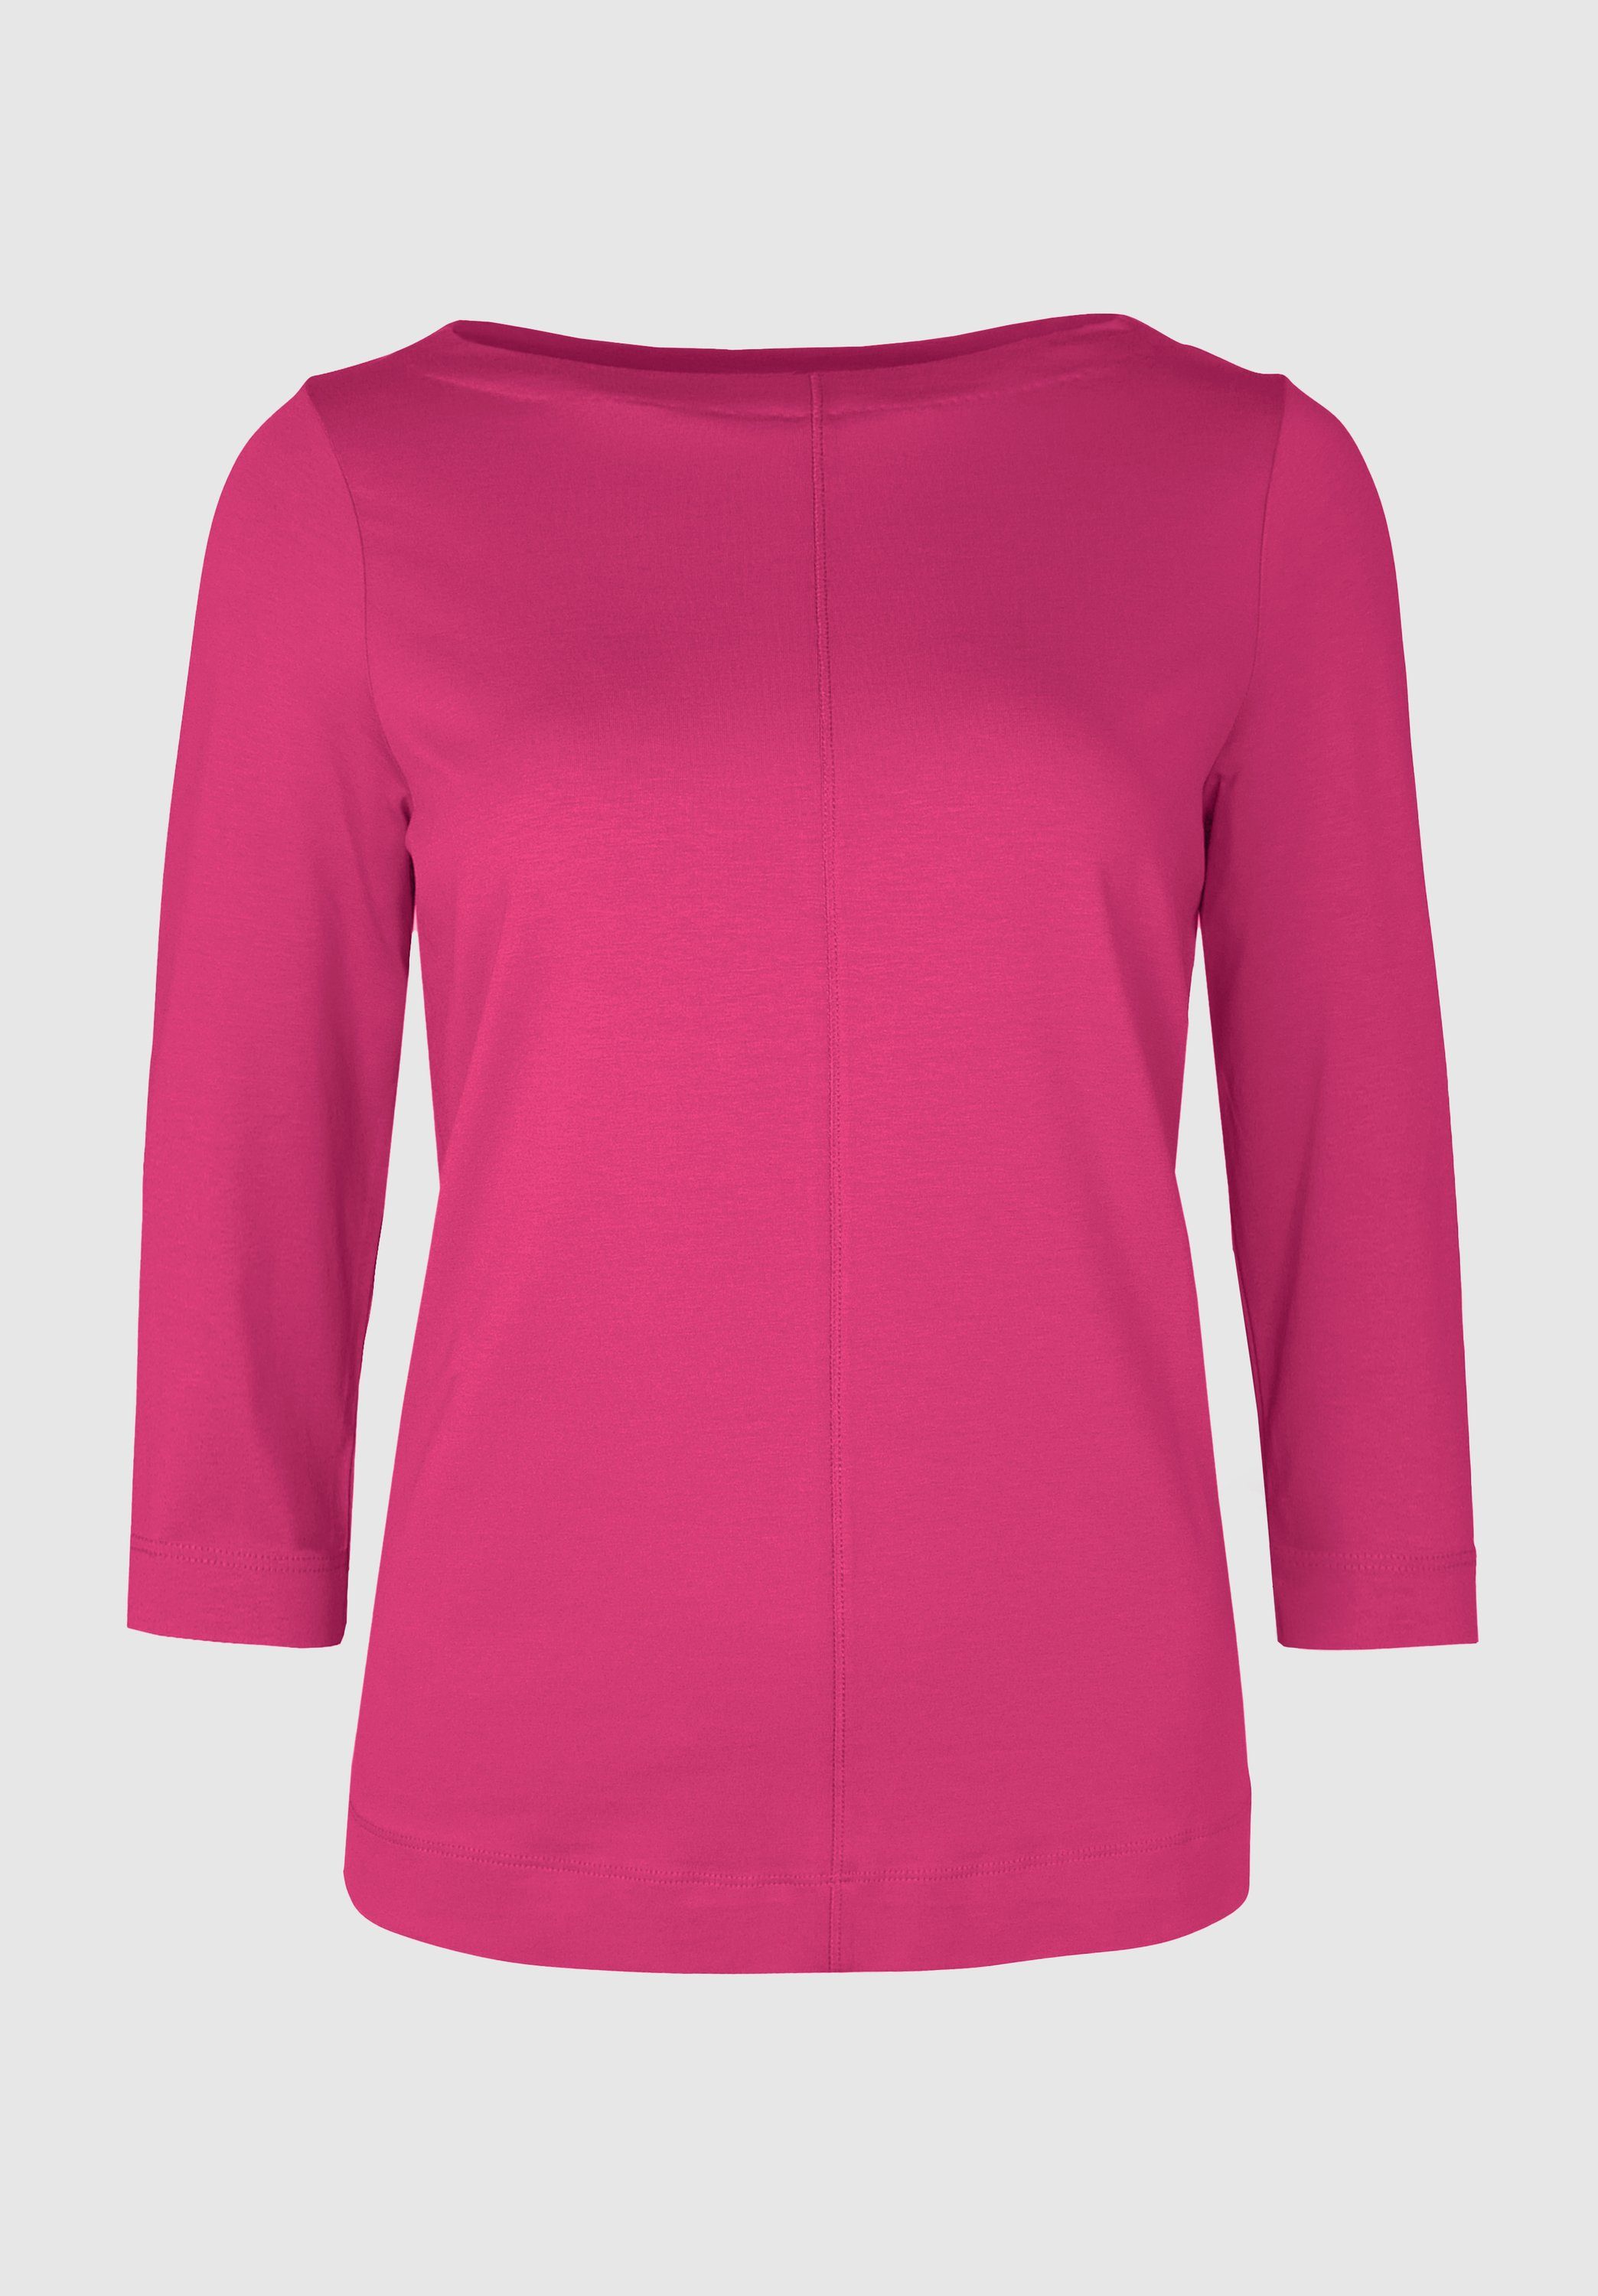 modernem pink und in bianca DIELLA 3/4-Arm-Shirt angesagten Look cool Trendfarben